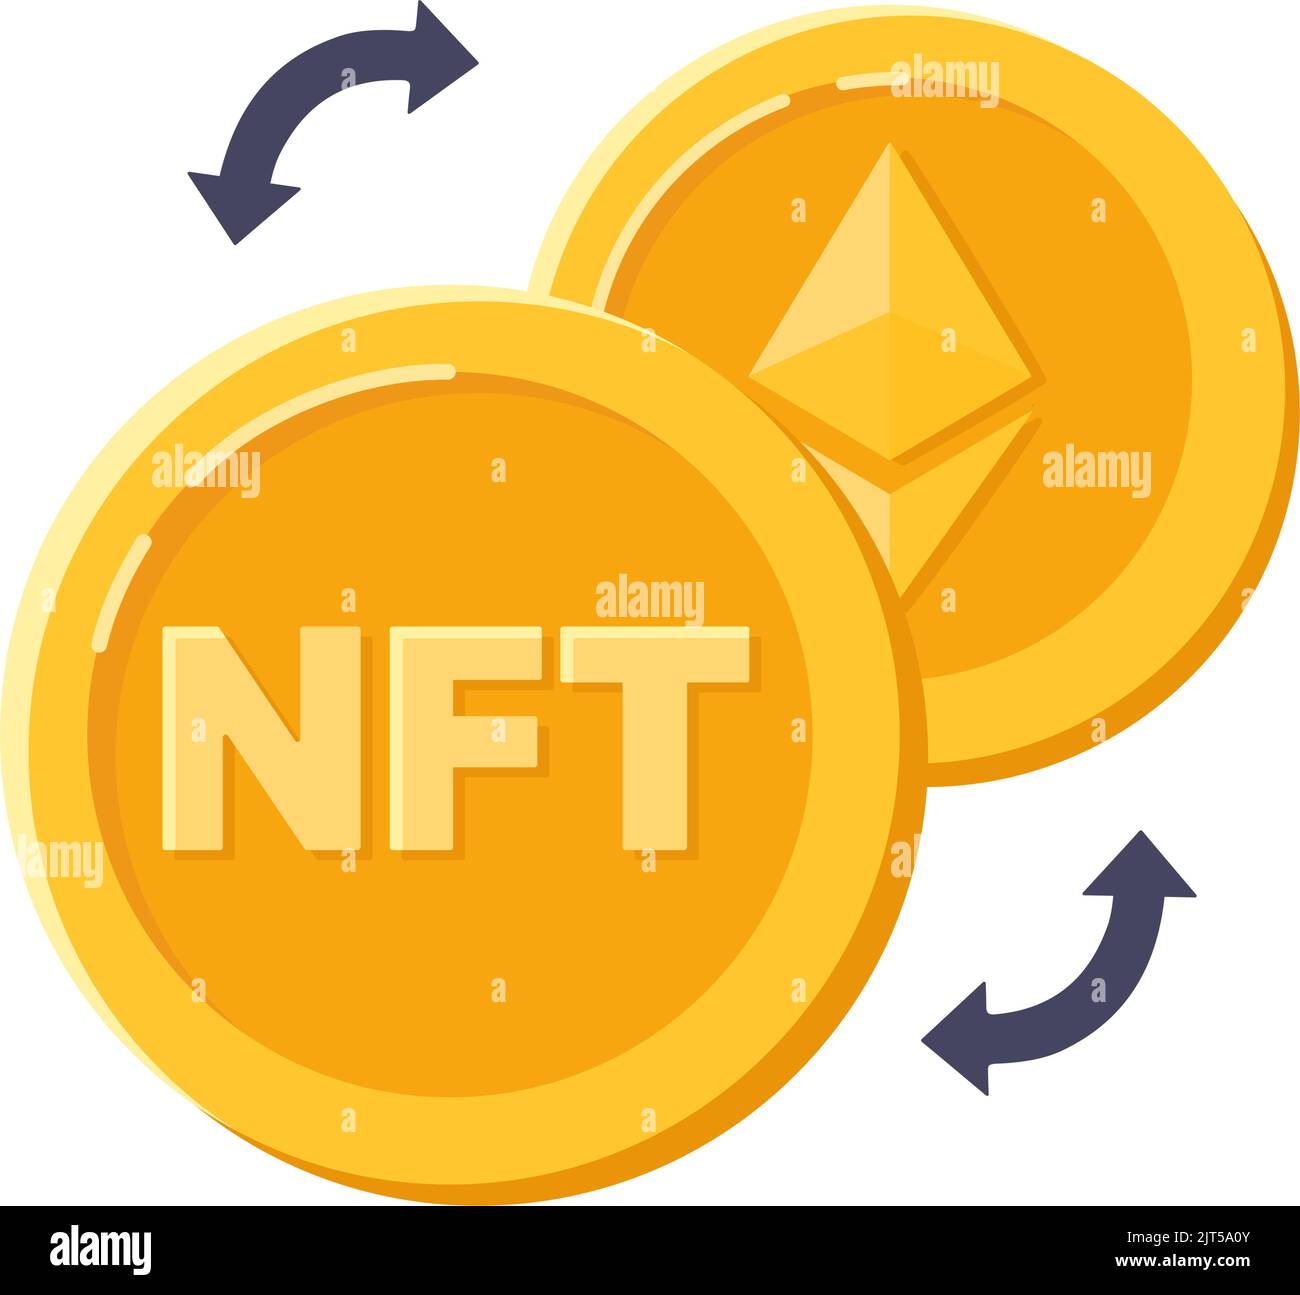 NFT-Technologie, ethereum-Münzen. Blockchain-Technologie Ether, bargeldloser Austausch. Vektorgrafik Stock Vektor